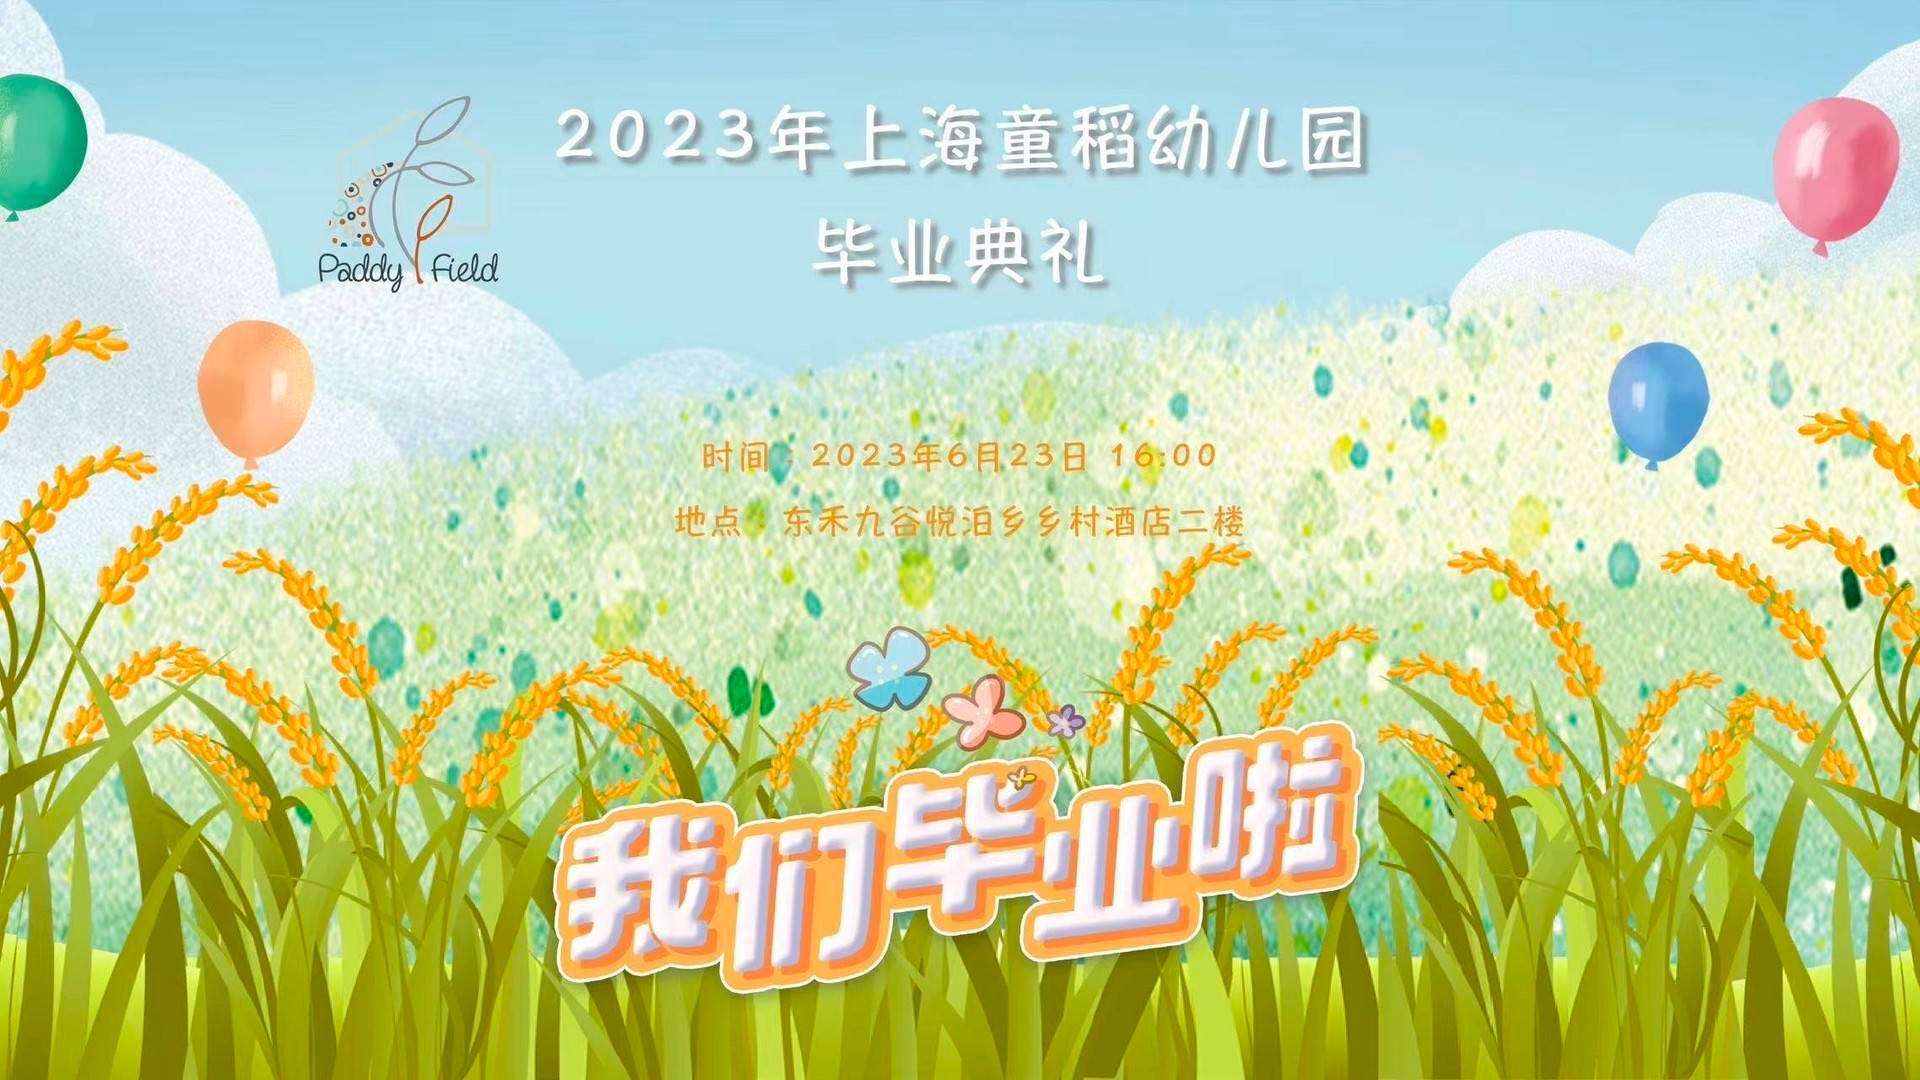 2023年上海童稻幼儿园毕业典礼 30S花絮